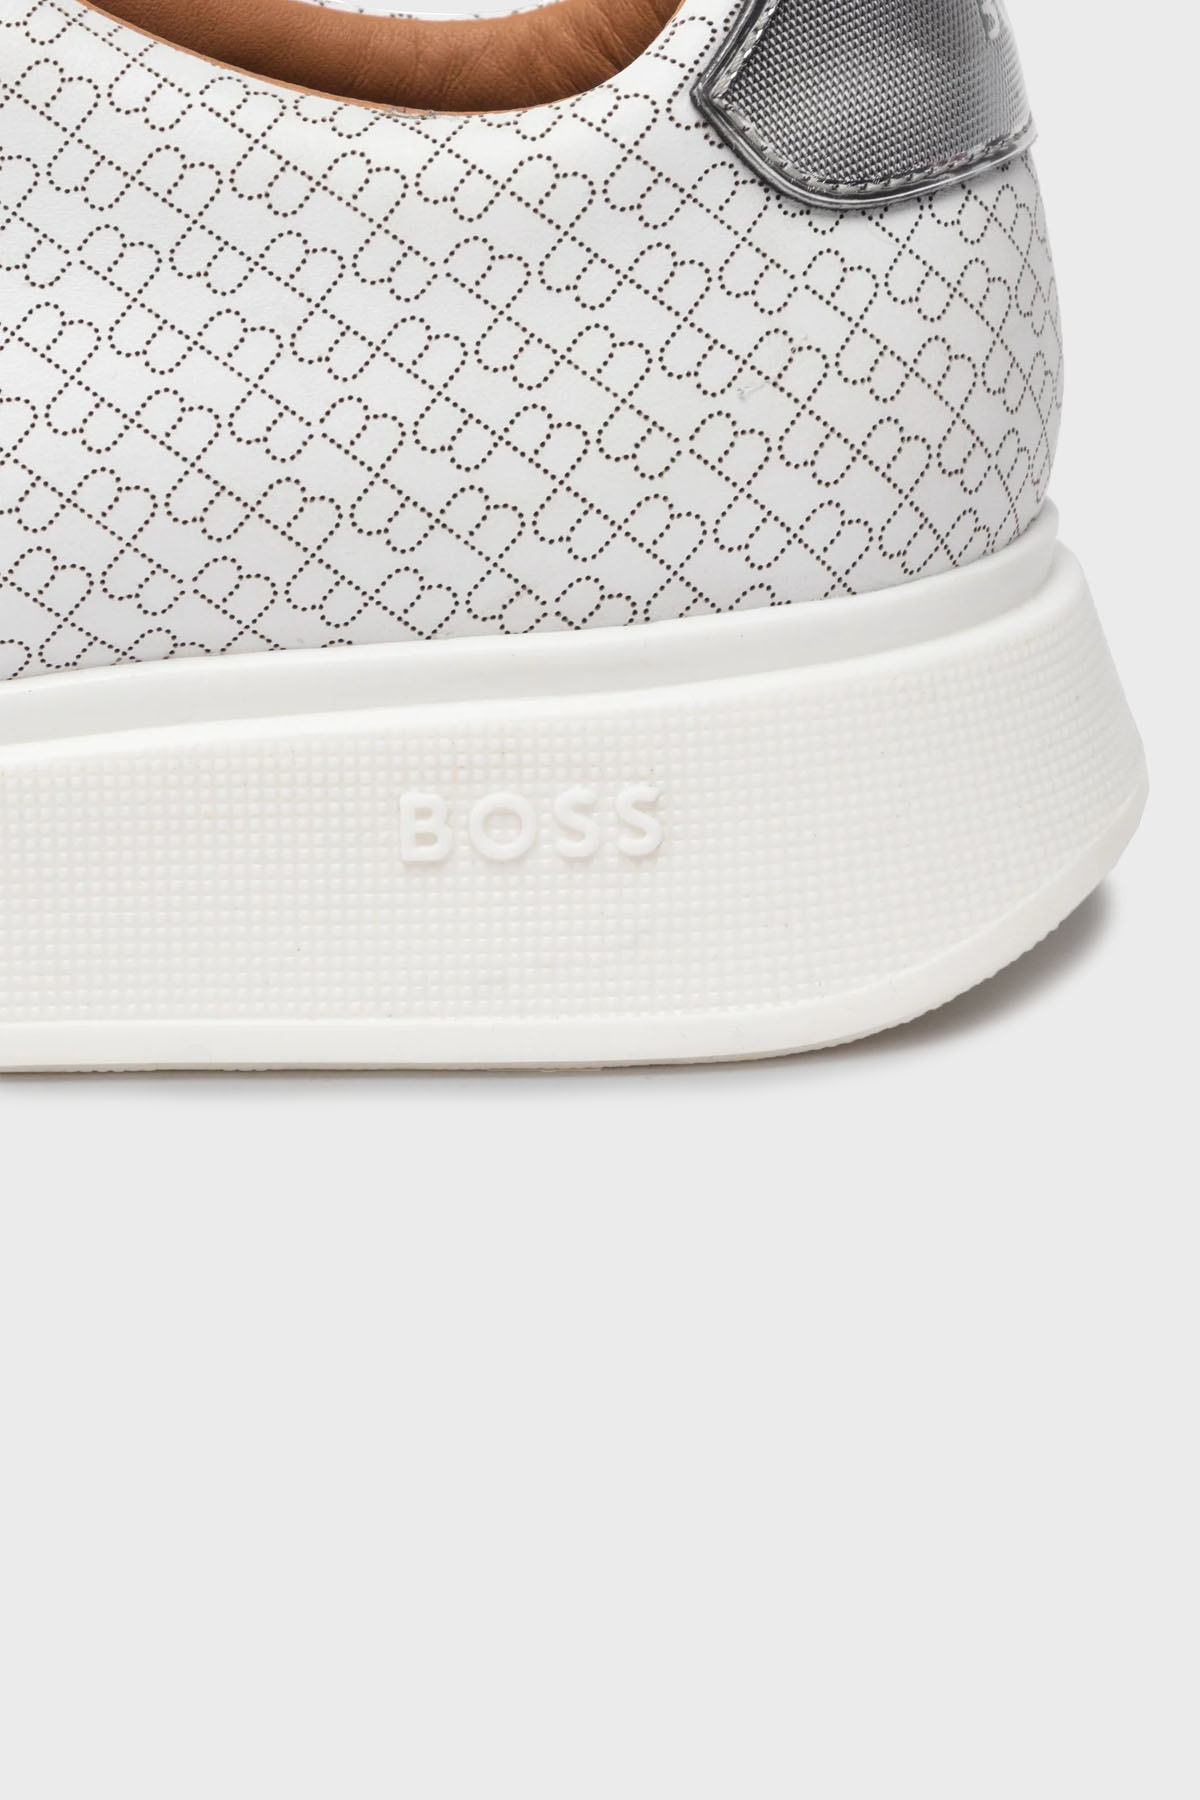 Boss Logolu Hakiki Deri Sneaker Erkek Ayakkabı 50474463 104 BEYAZ